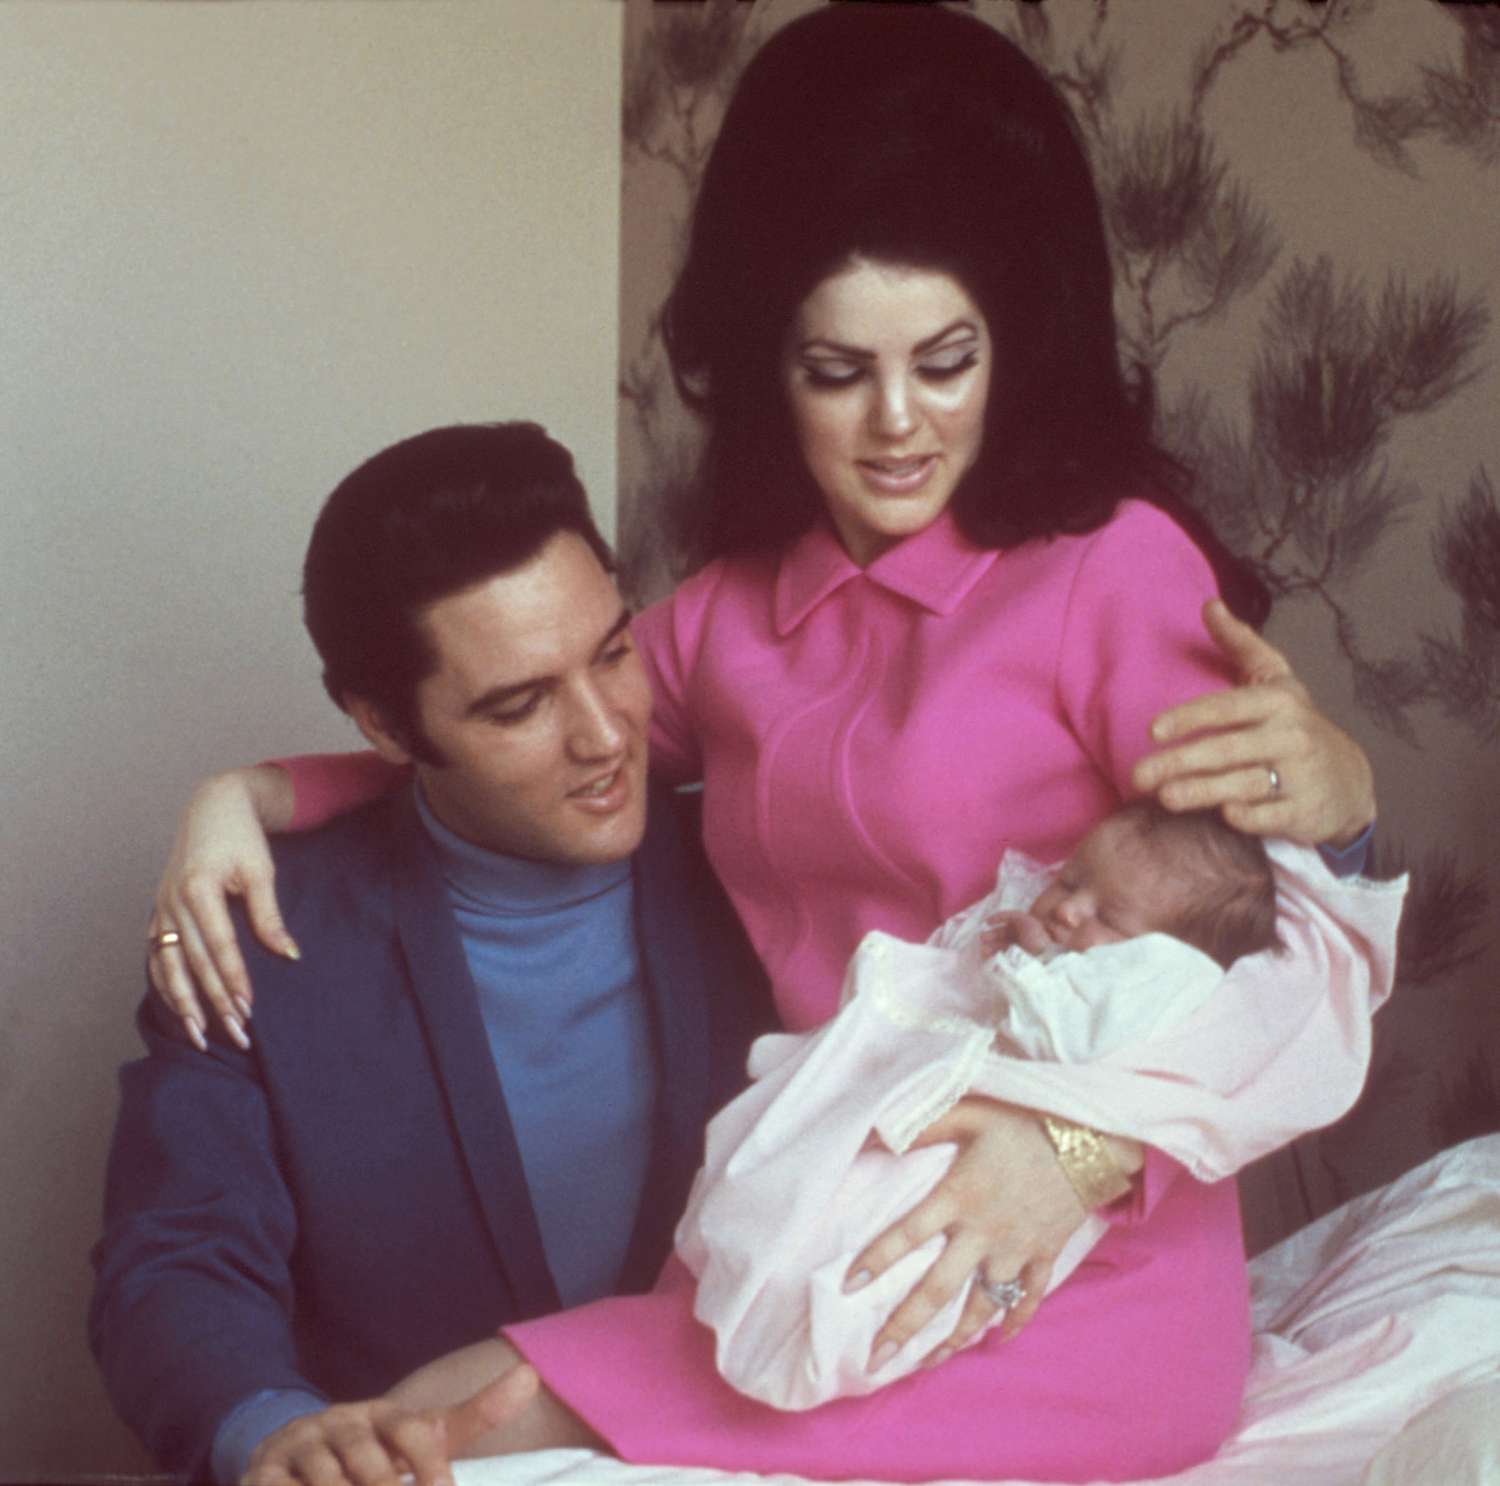 Ang anak nga babaye ni Elvis Presley nga si Lisa Marie Presley